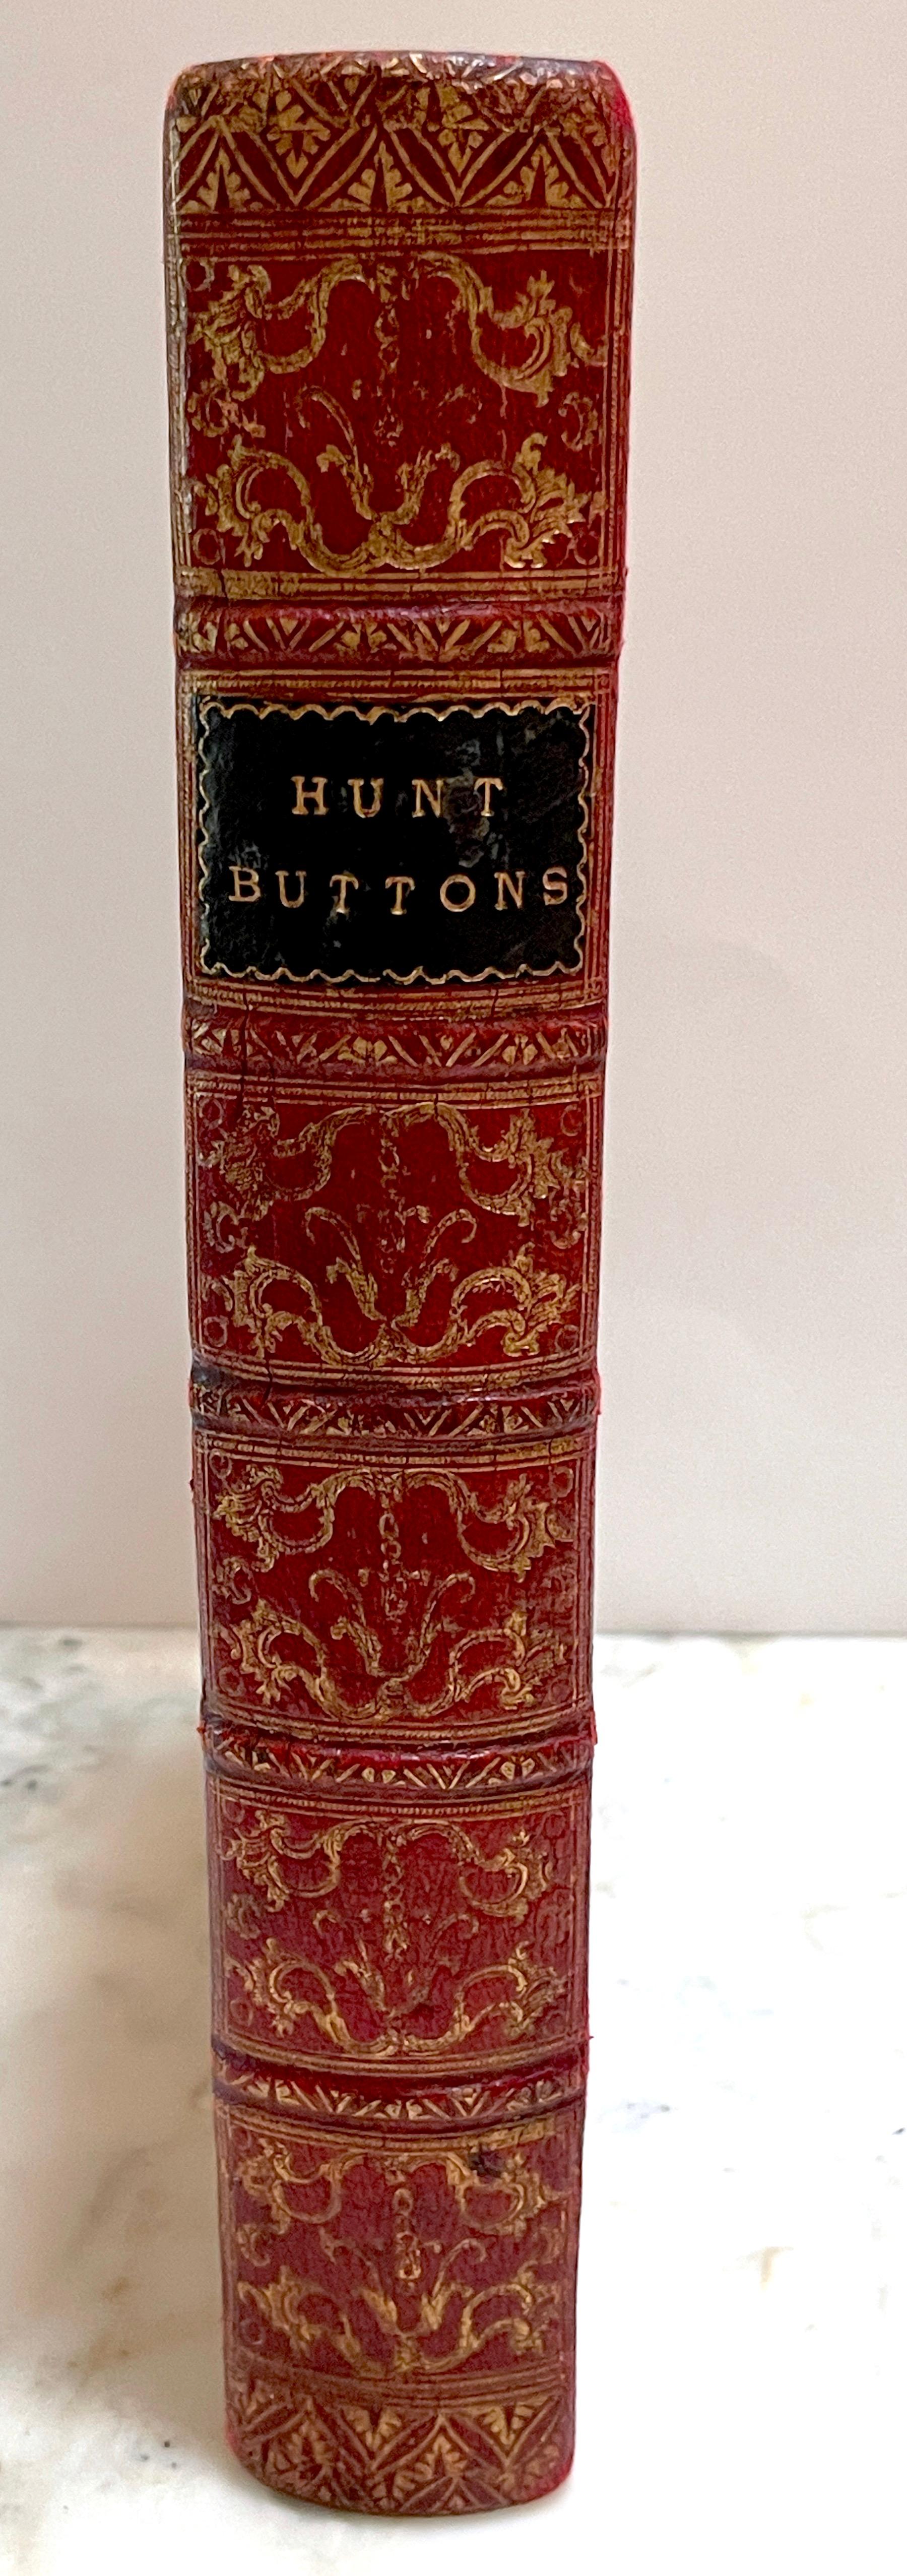 Rotes geprägtes Ledergefäß „Faux / Dummy“-Bücherschachtel mit Knöpfen aus dem 19. Jahrhundert  (Vergoldet)